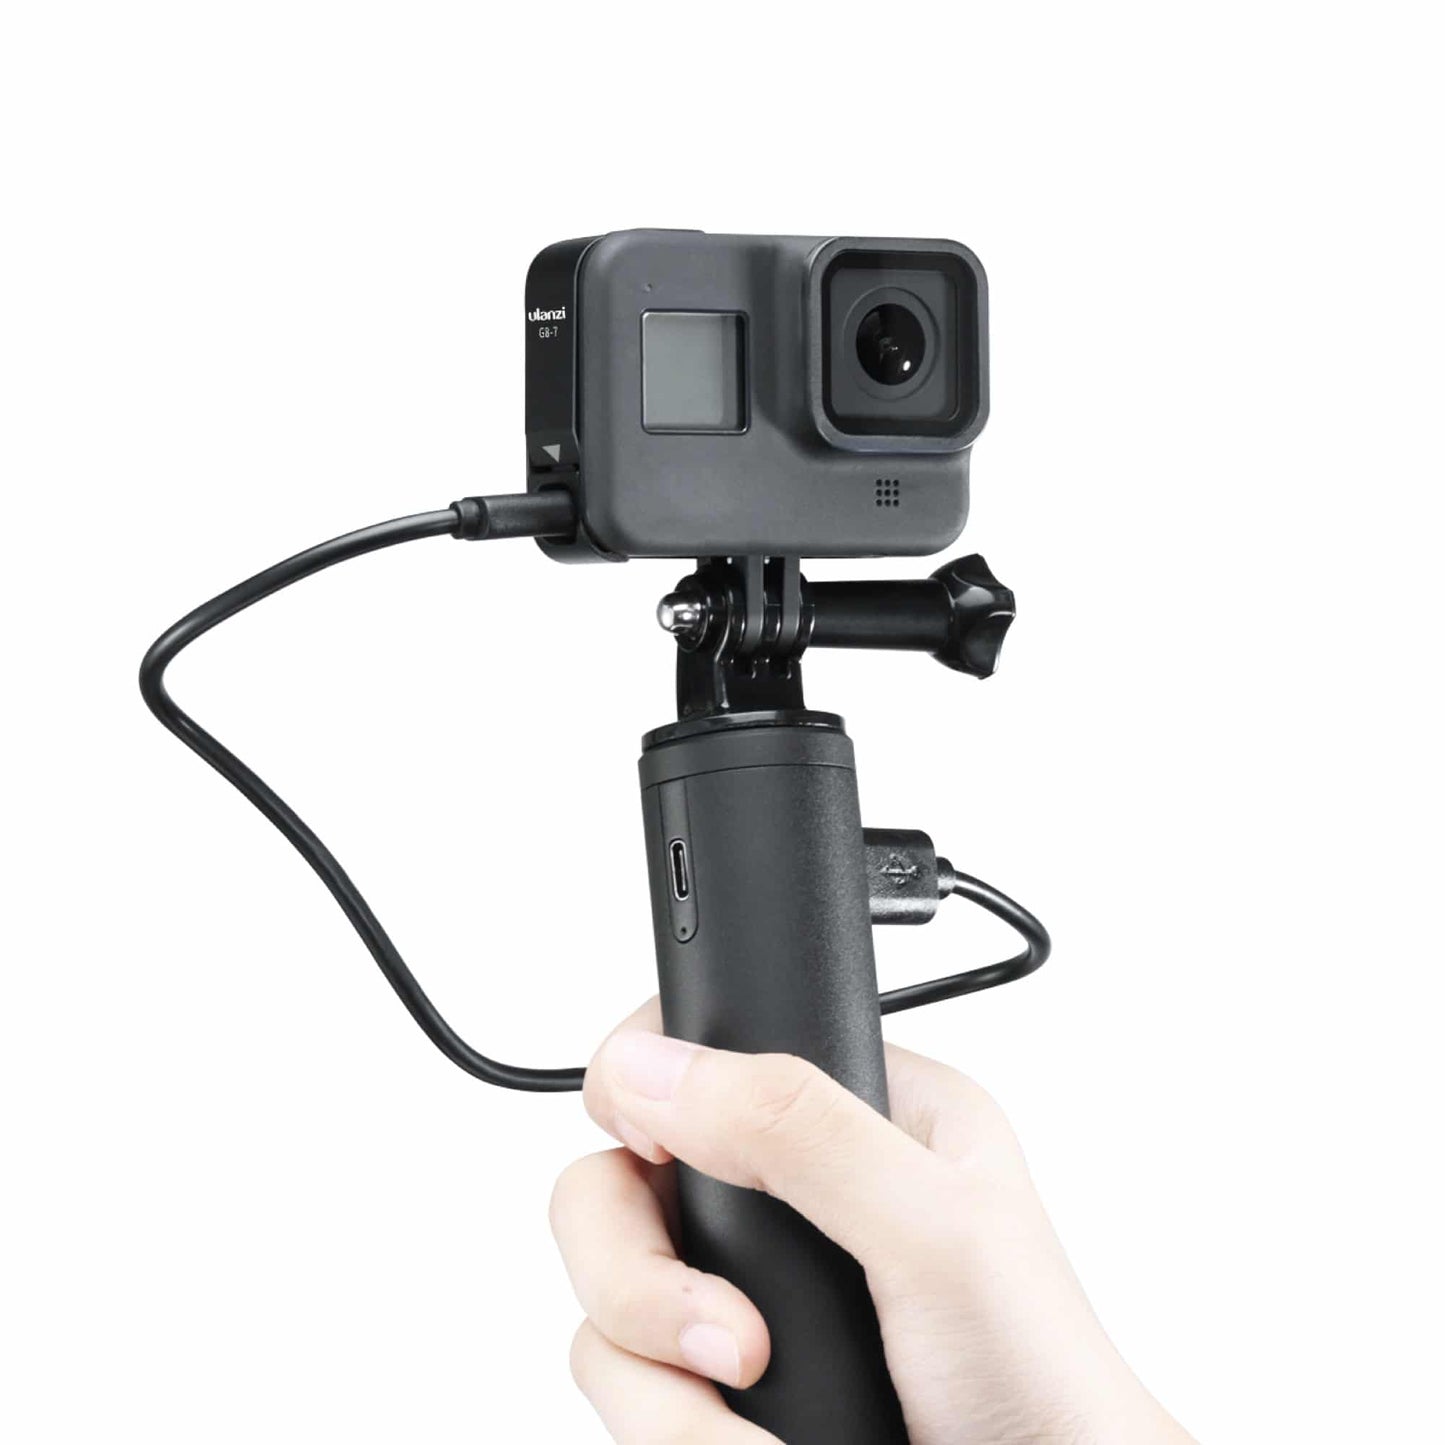 Ulanzi G8-7 batterijklep met oplaadaansluiting voor GoPro 8